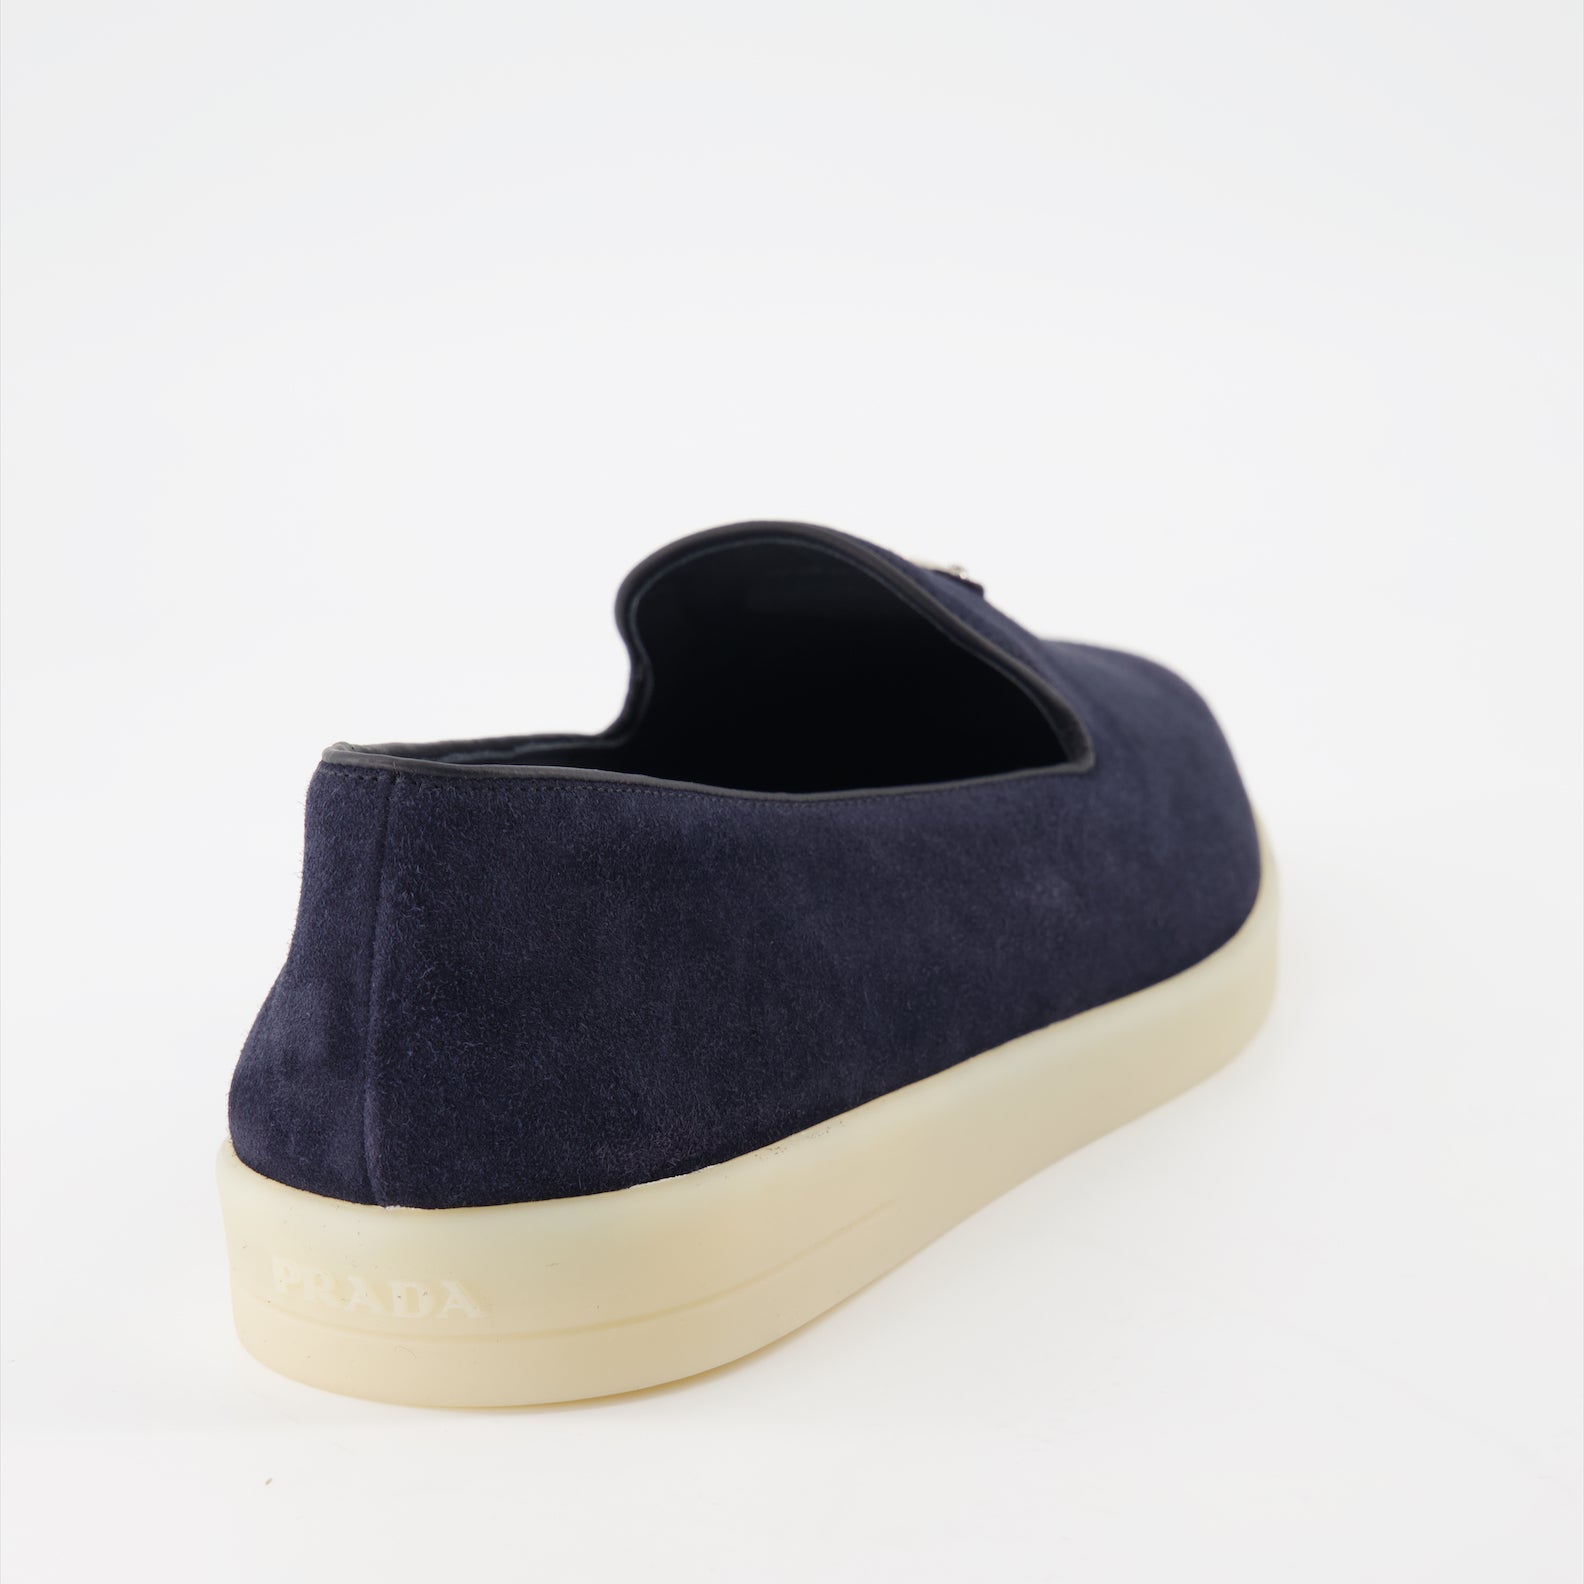 Velvet loafers